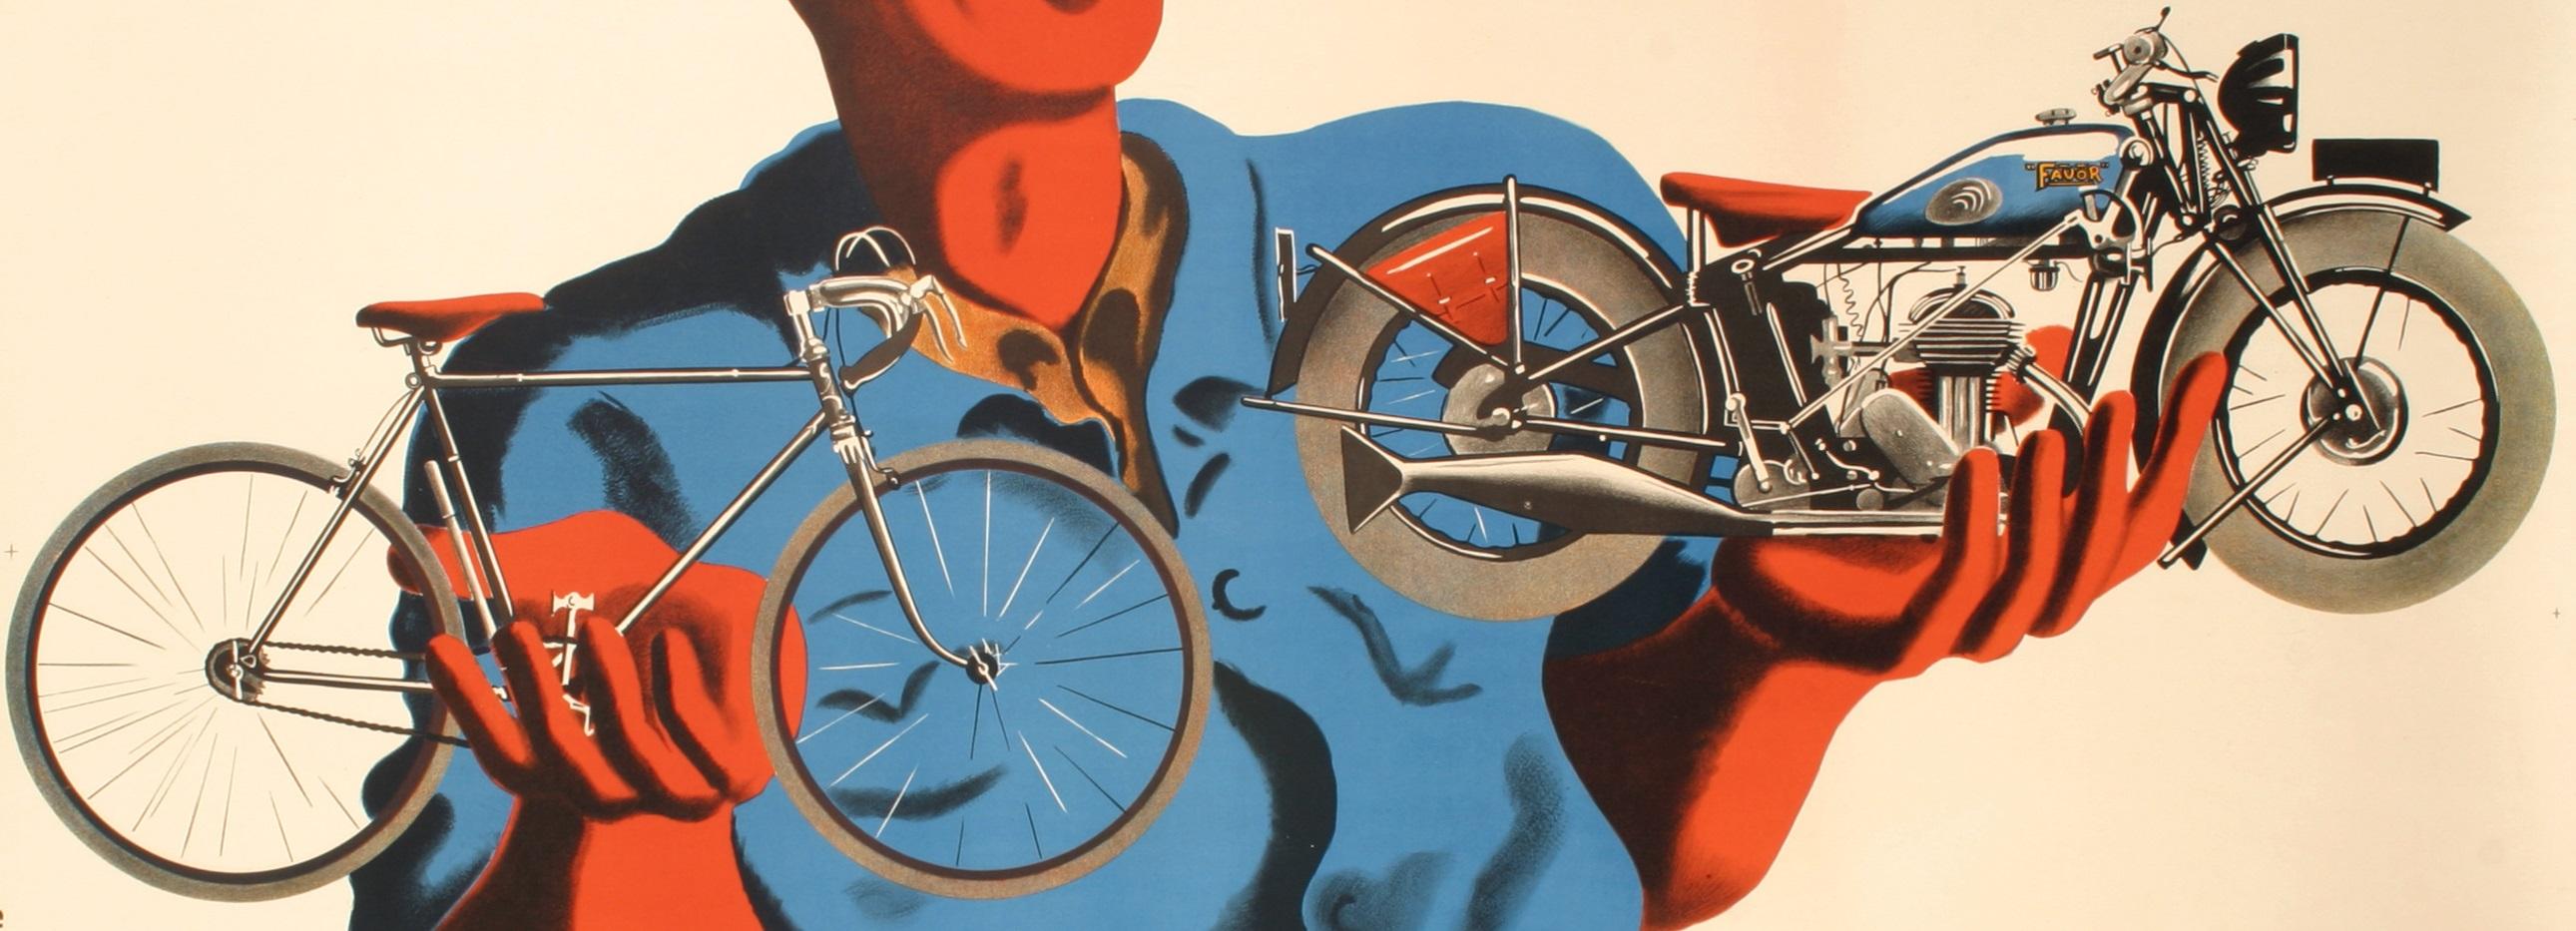 Affiche originale Art déco créée par Bellenger pour Cycle Favor en 1937.

Artistics : Bellenger Jacques et Pierre
Titre : Favor - De la belle mécanique ! Cycles - Motos
Date : 1937
Taille : 23.6 x 15 in / 60 x 38 cm
Imprimeur : Etbts de la